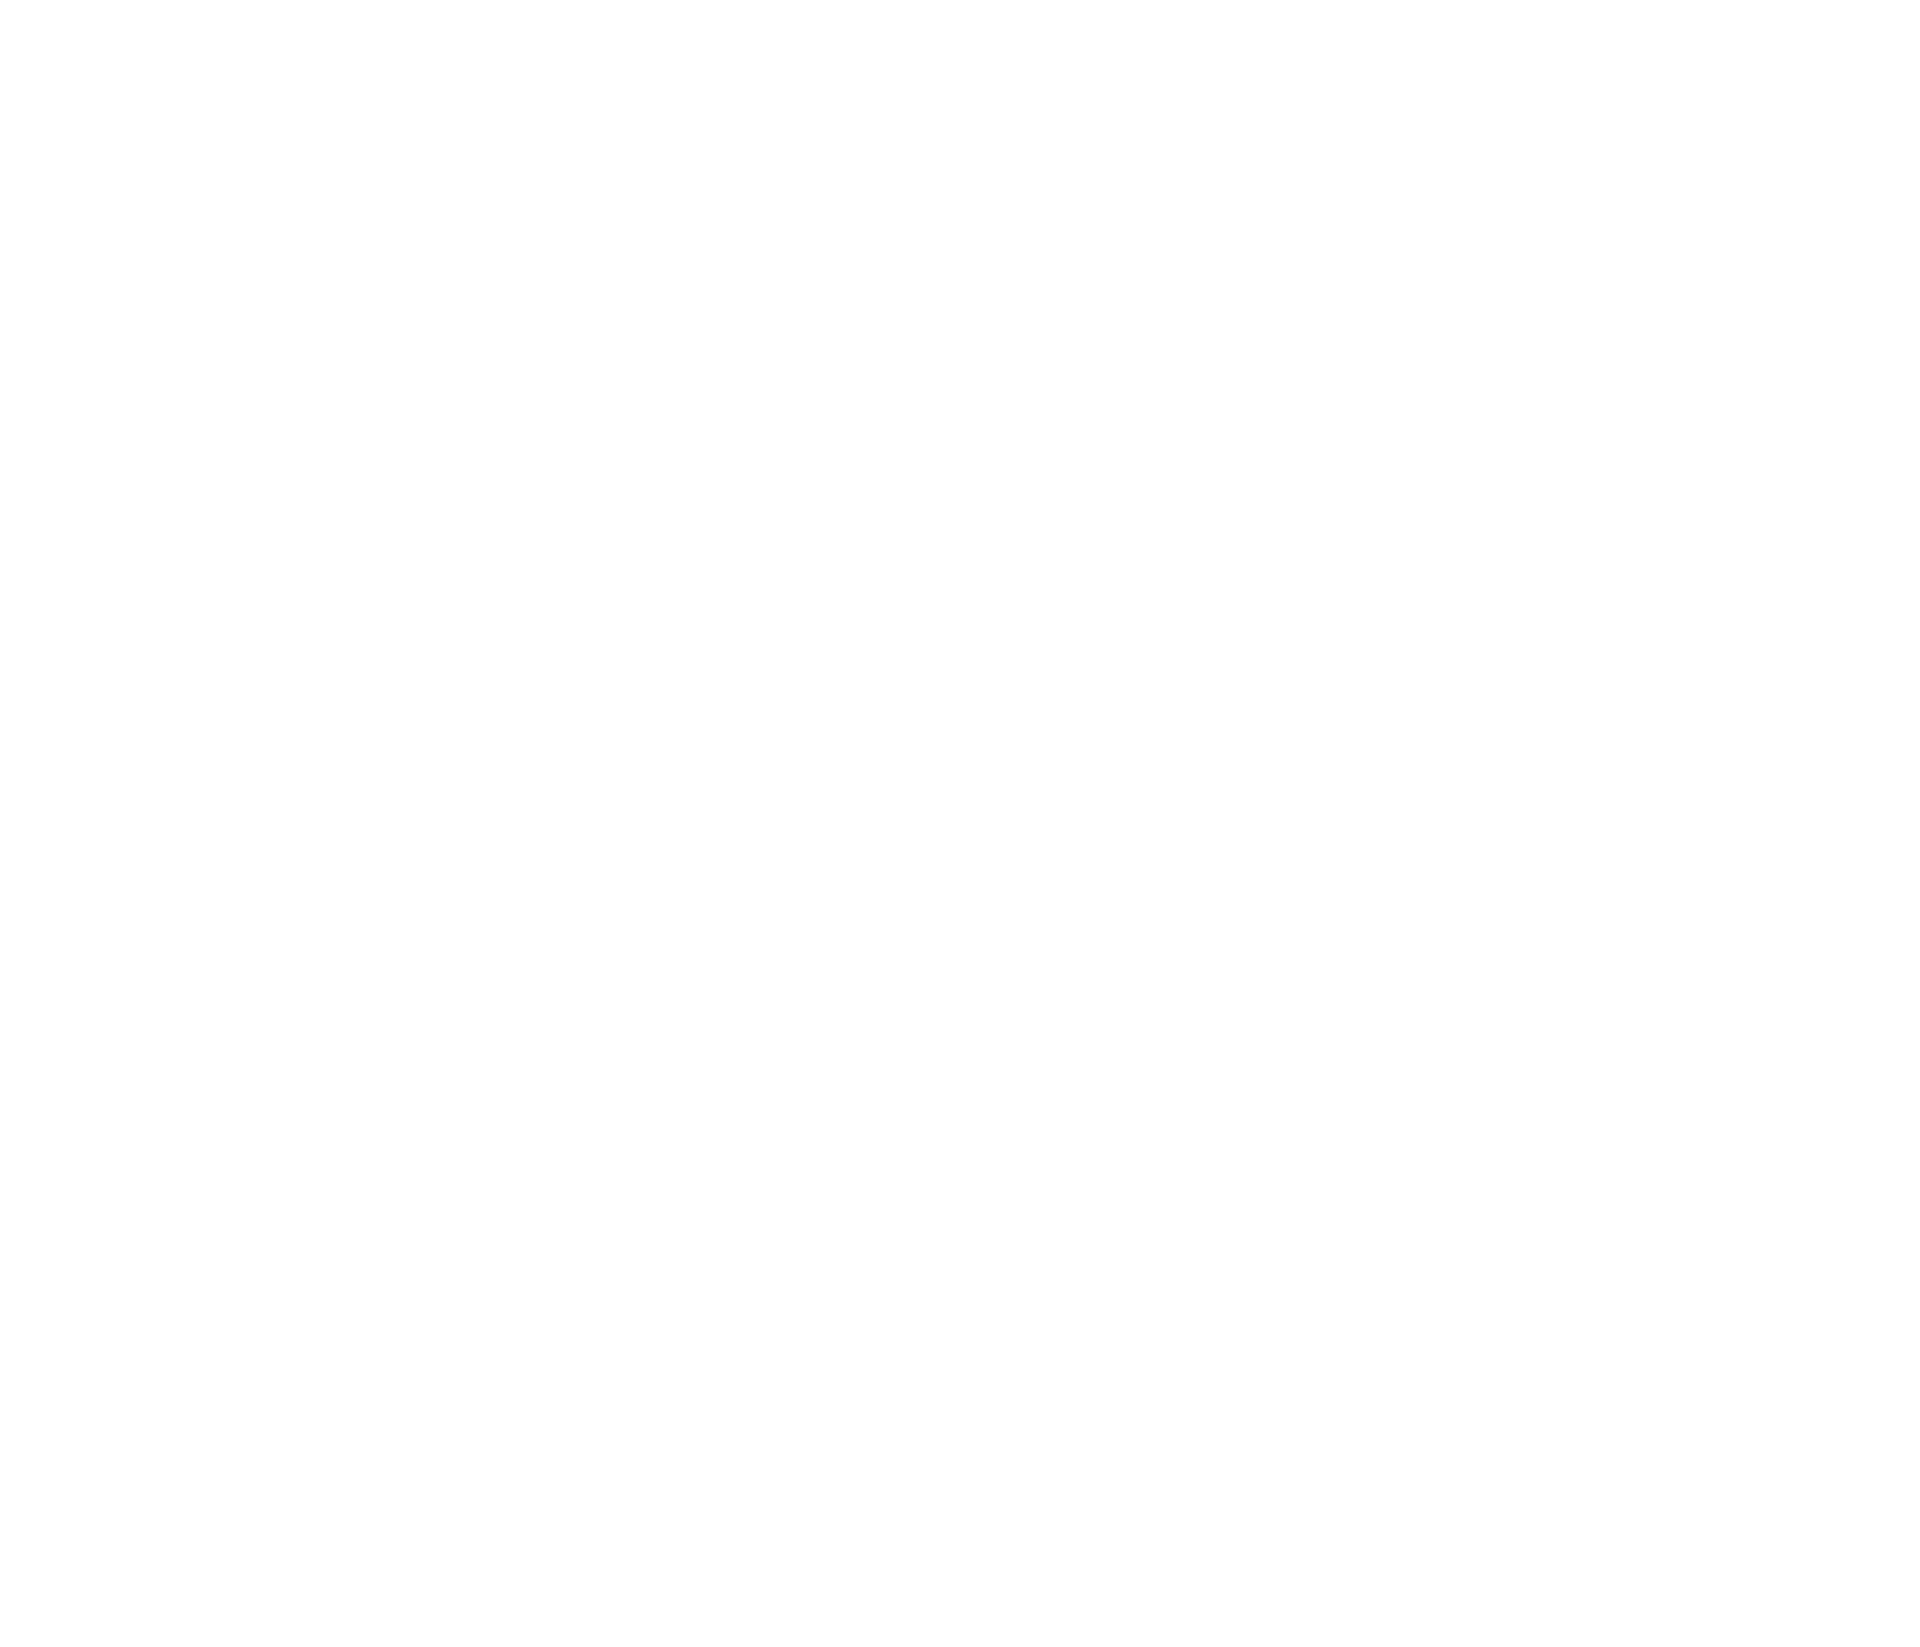 A bunch of swirls on a dark background